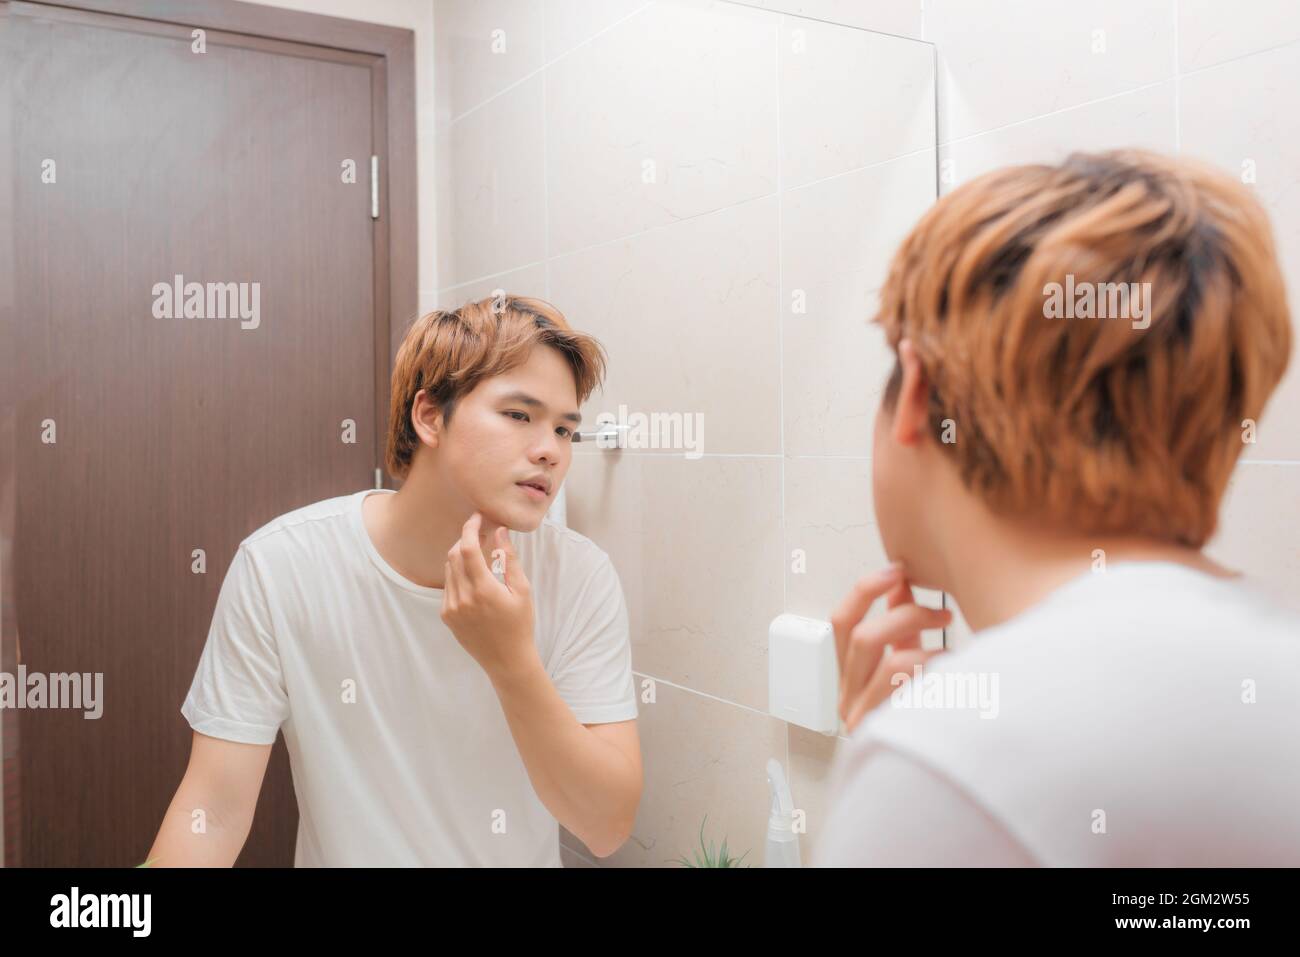 Junger Mann, der vor dem Spiegel steht und sein Gesicht berührt Stockfoto